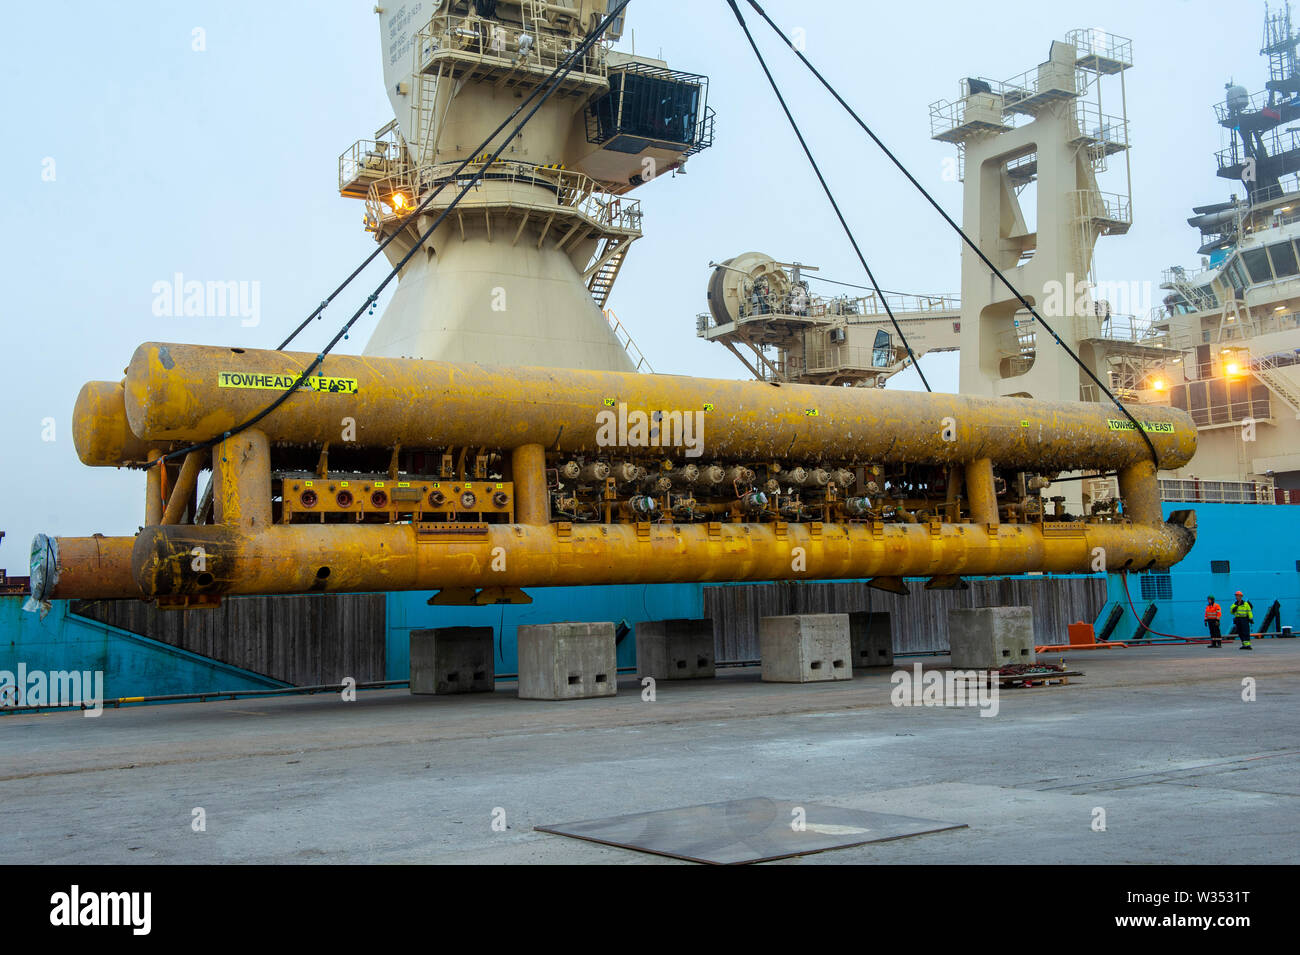 Maersk Installer di attraccare in Lerwick Shetland lo scarico dalla gru smantellata una parte di una piattaforma petrolifera sulla banchina del petrolio del Mare del Nord i campi Foto Stock